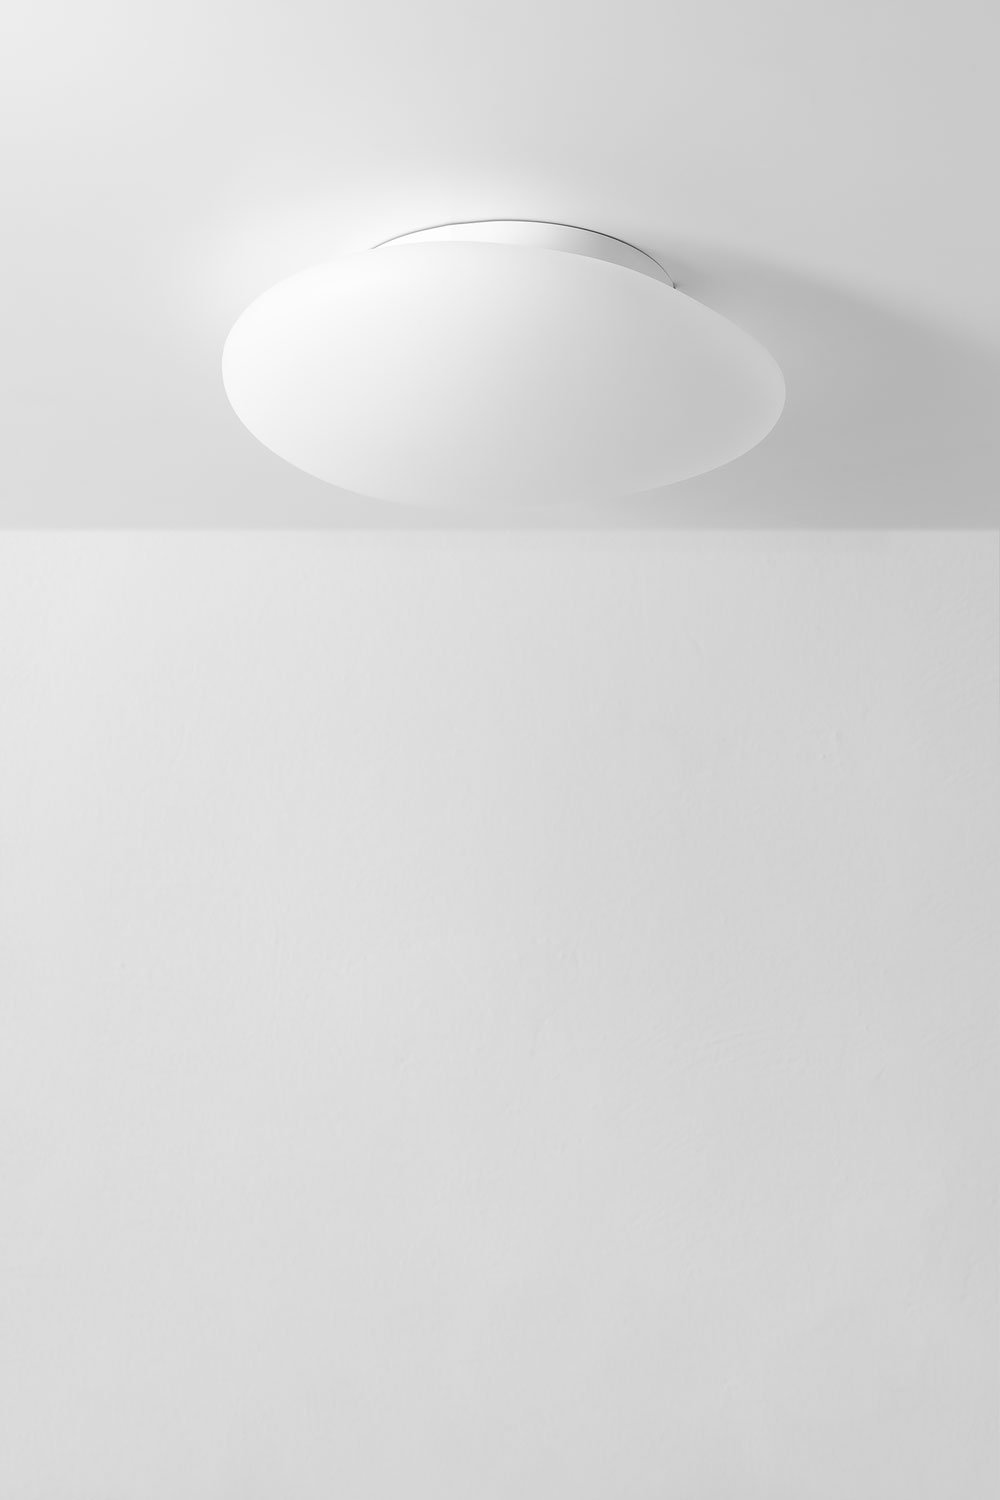 Maksim ceiliing lamp, gallery image 1